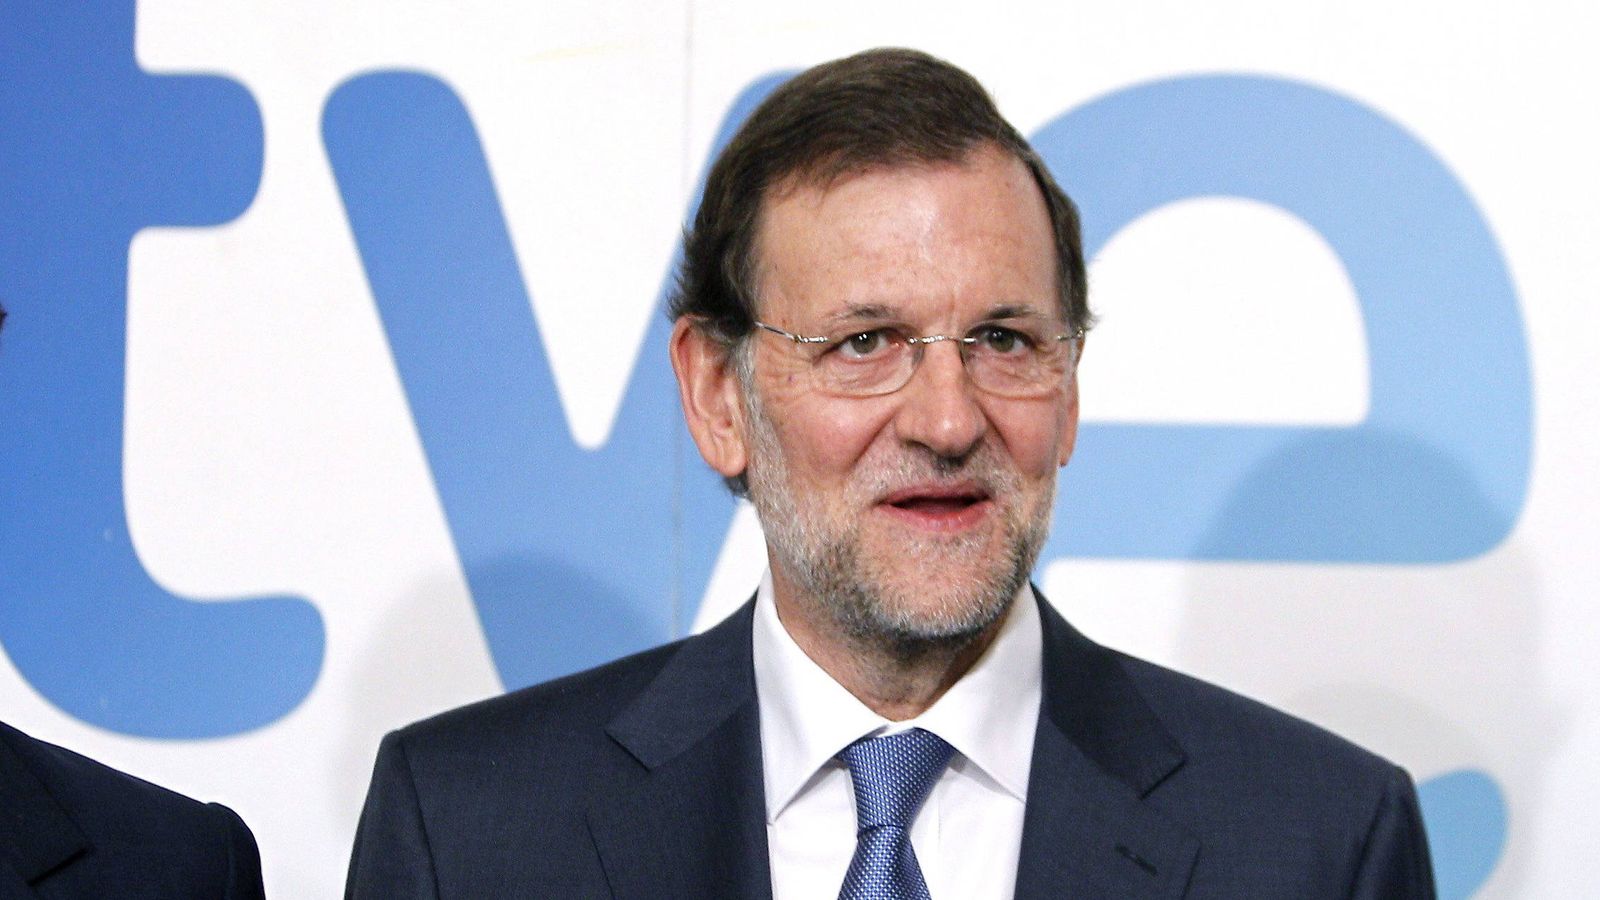 Foto: El presidente del Gobierno, Mariano Rajoy, a su llegada a los estudios Buñuel, para realizar una entrevista. (Efe) 